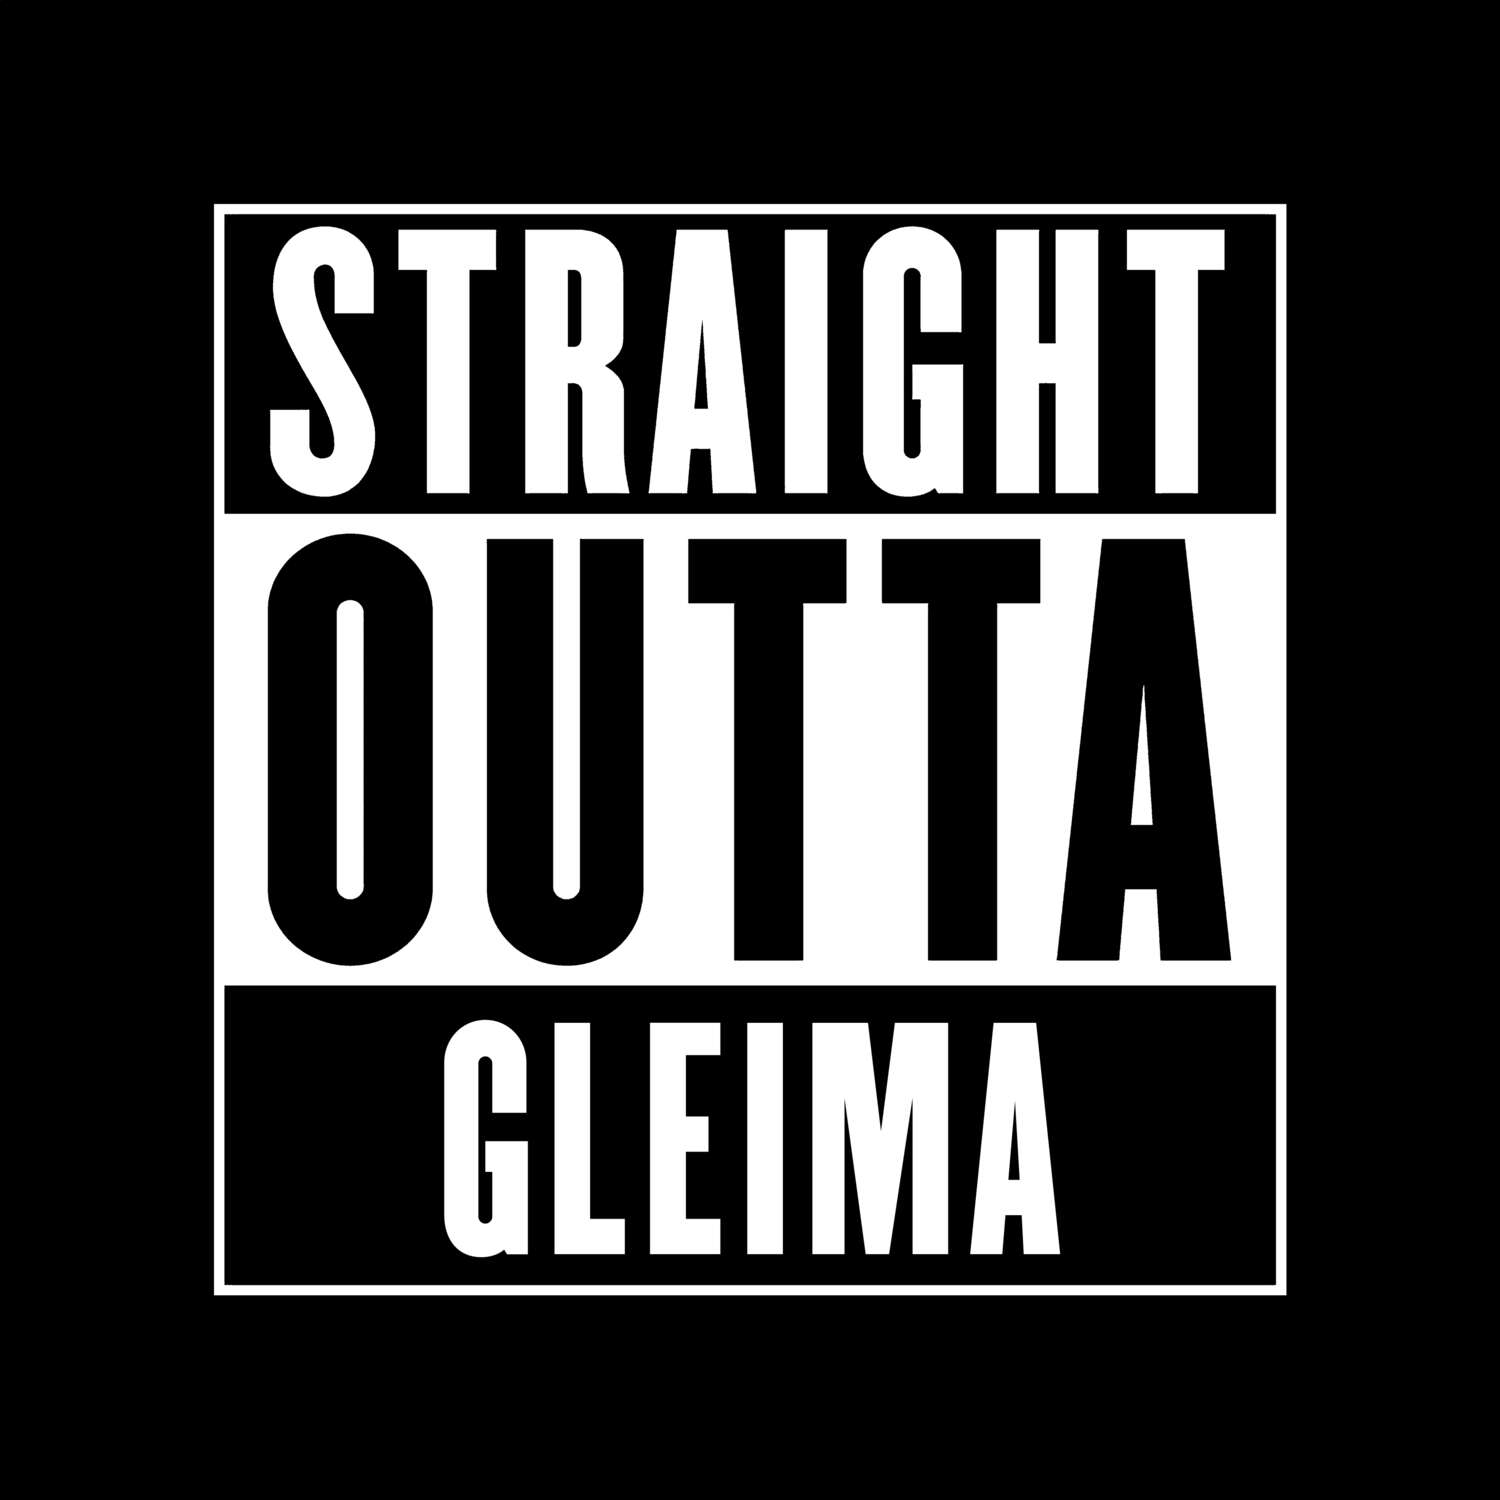 Gleima T-Shirt »Straight Outta«